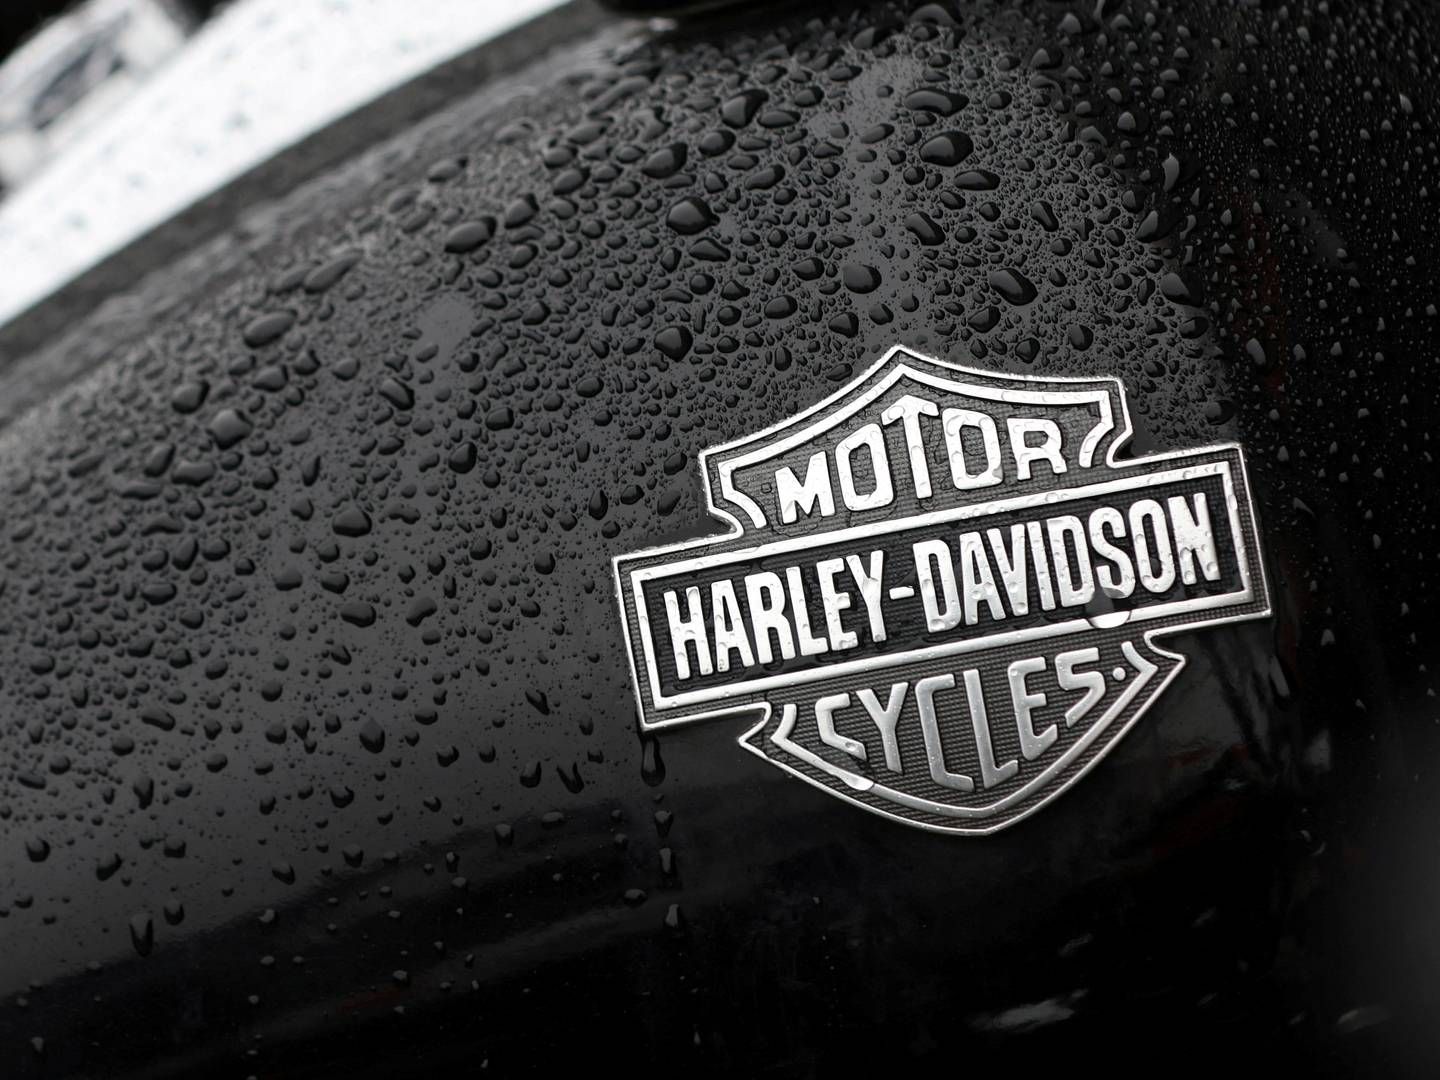 Global mangel på chips har ramt Harley-Davidson. | Foto: Andrew Kelly/REUTERS / X02844